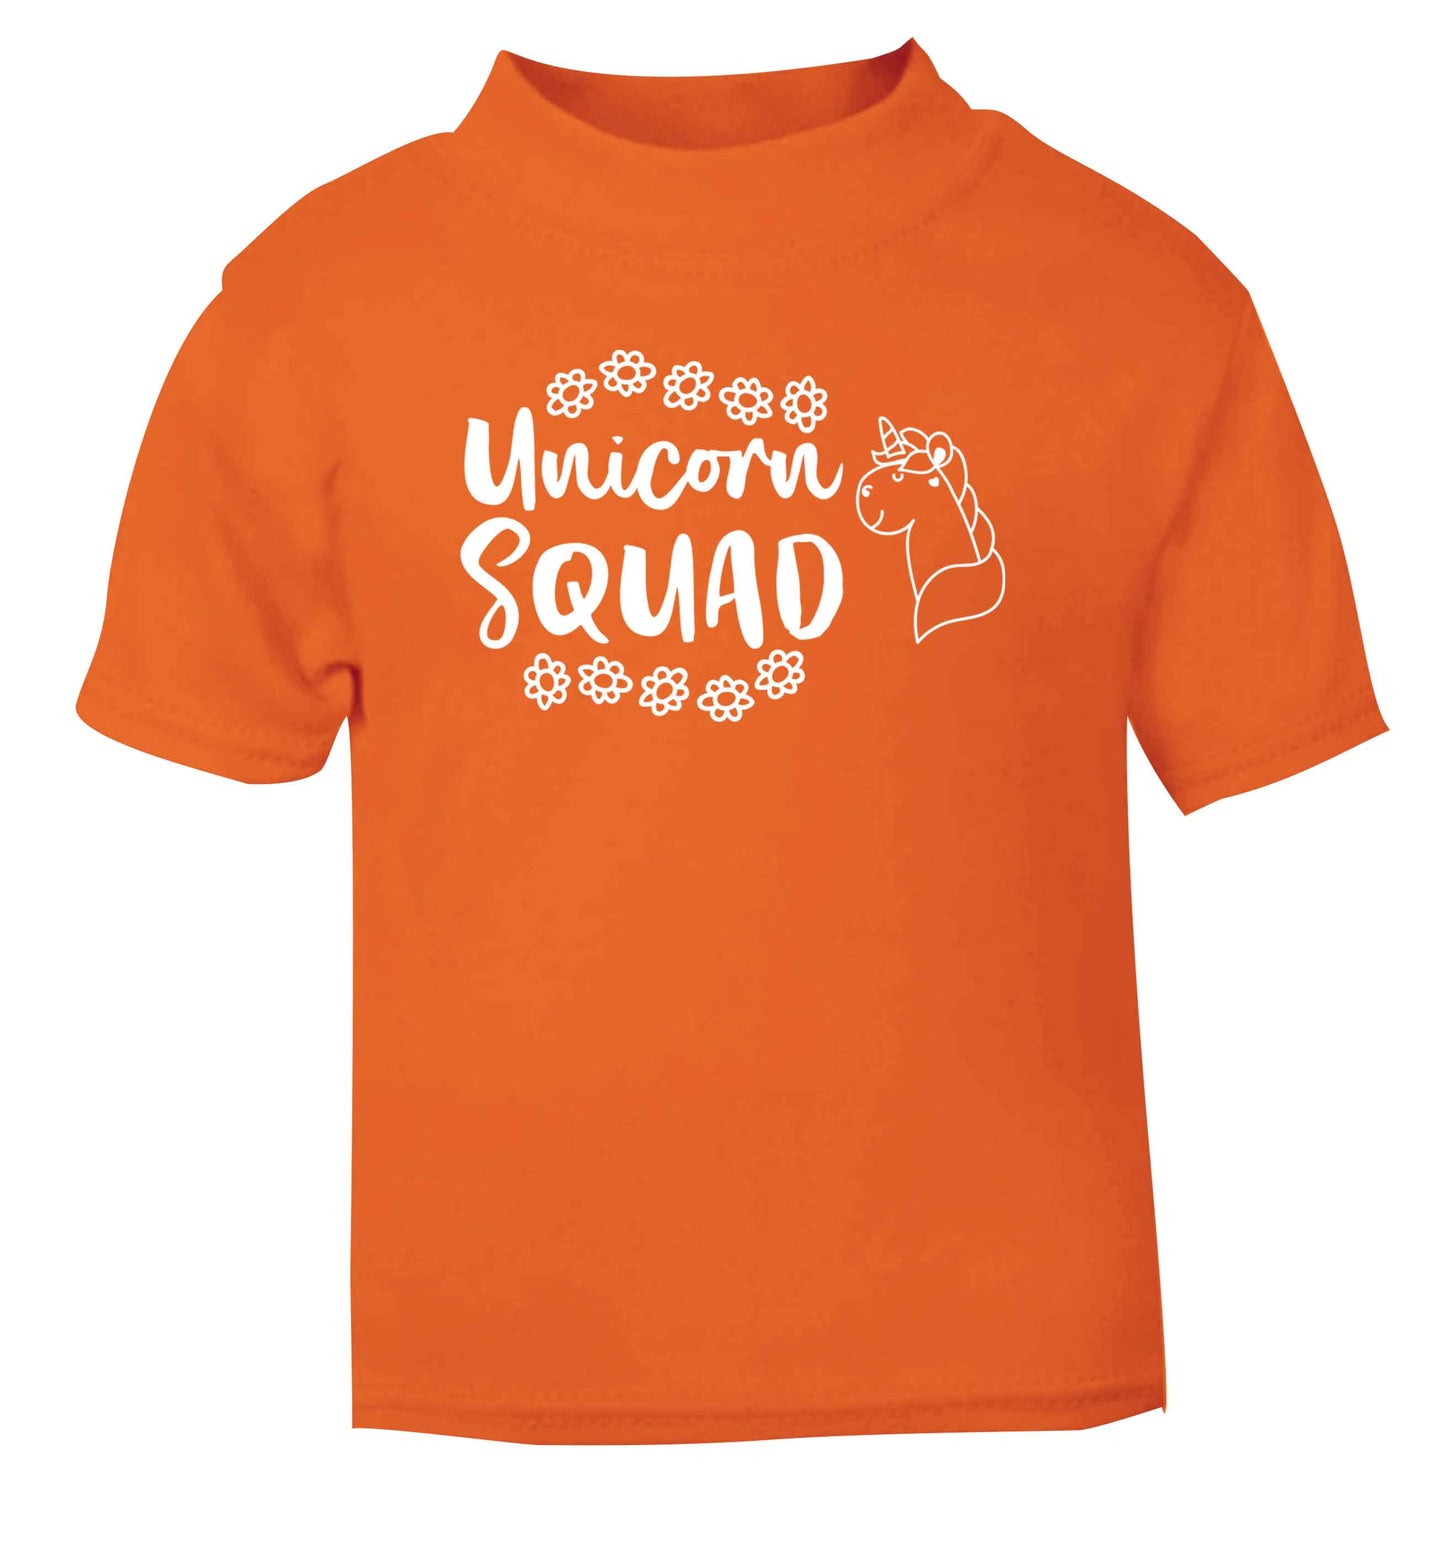 Unicorn Squad orange Baby Toddler Tshirt 2 Years